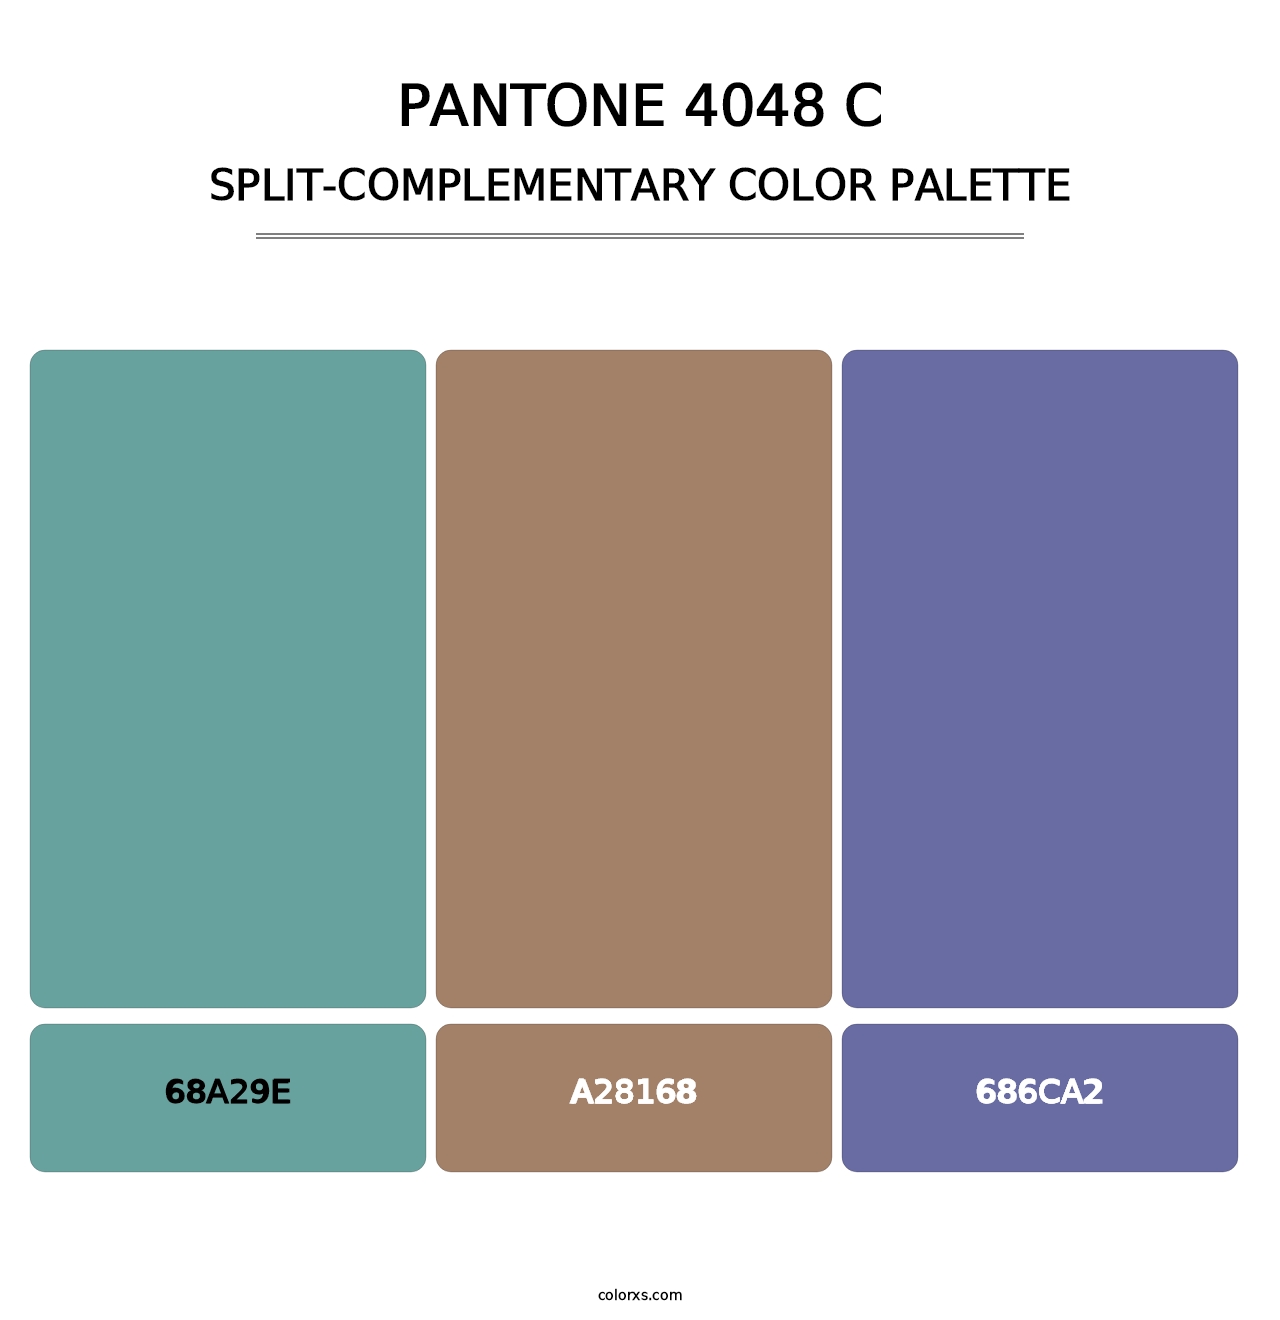 PANTONE 4048 C - Split-Complementary Color Palette